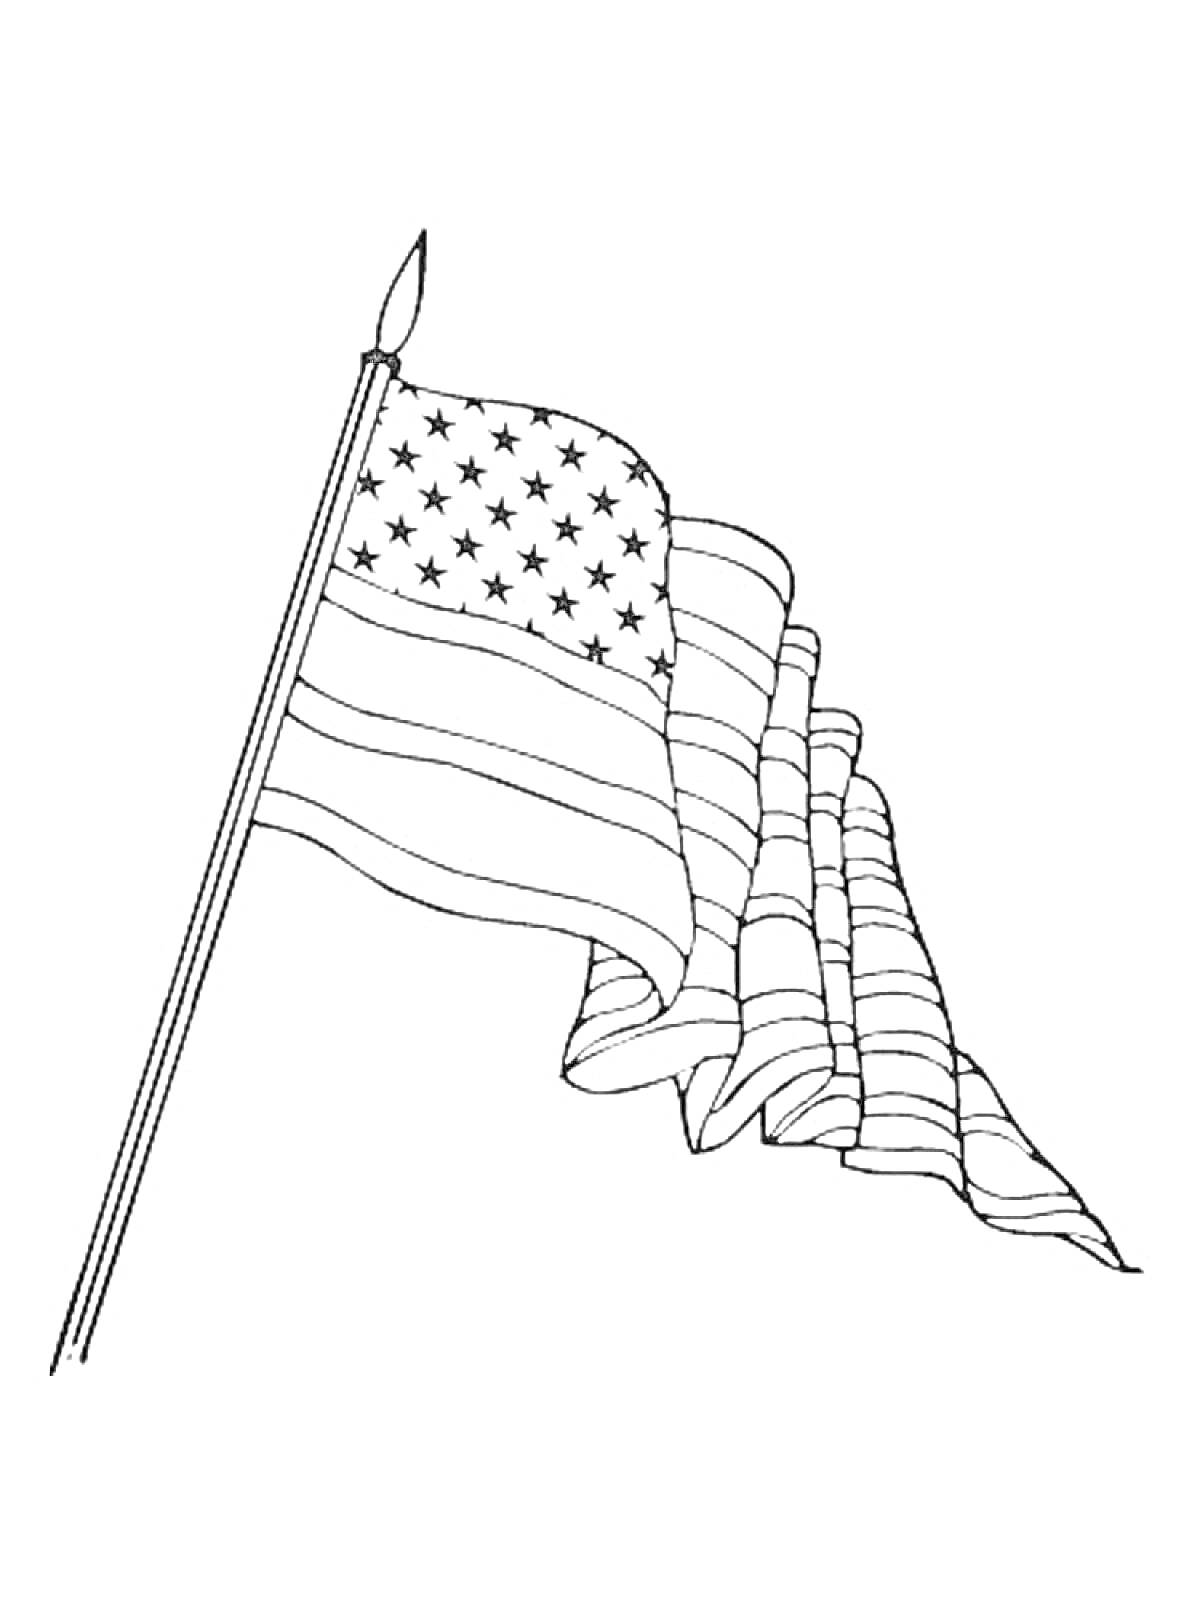 Флаг с полосами и звездами на древке со шпилем